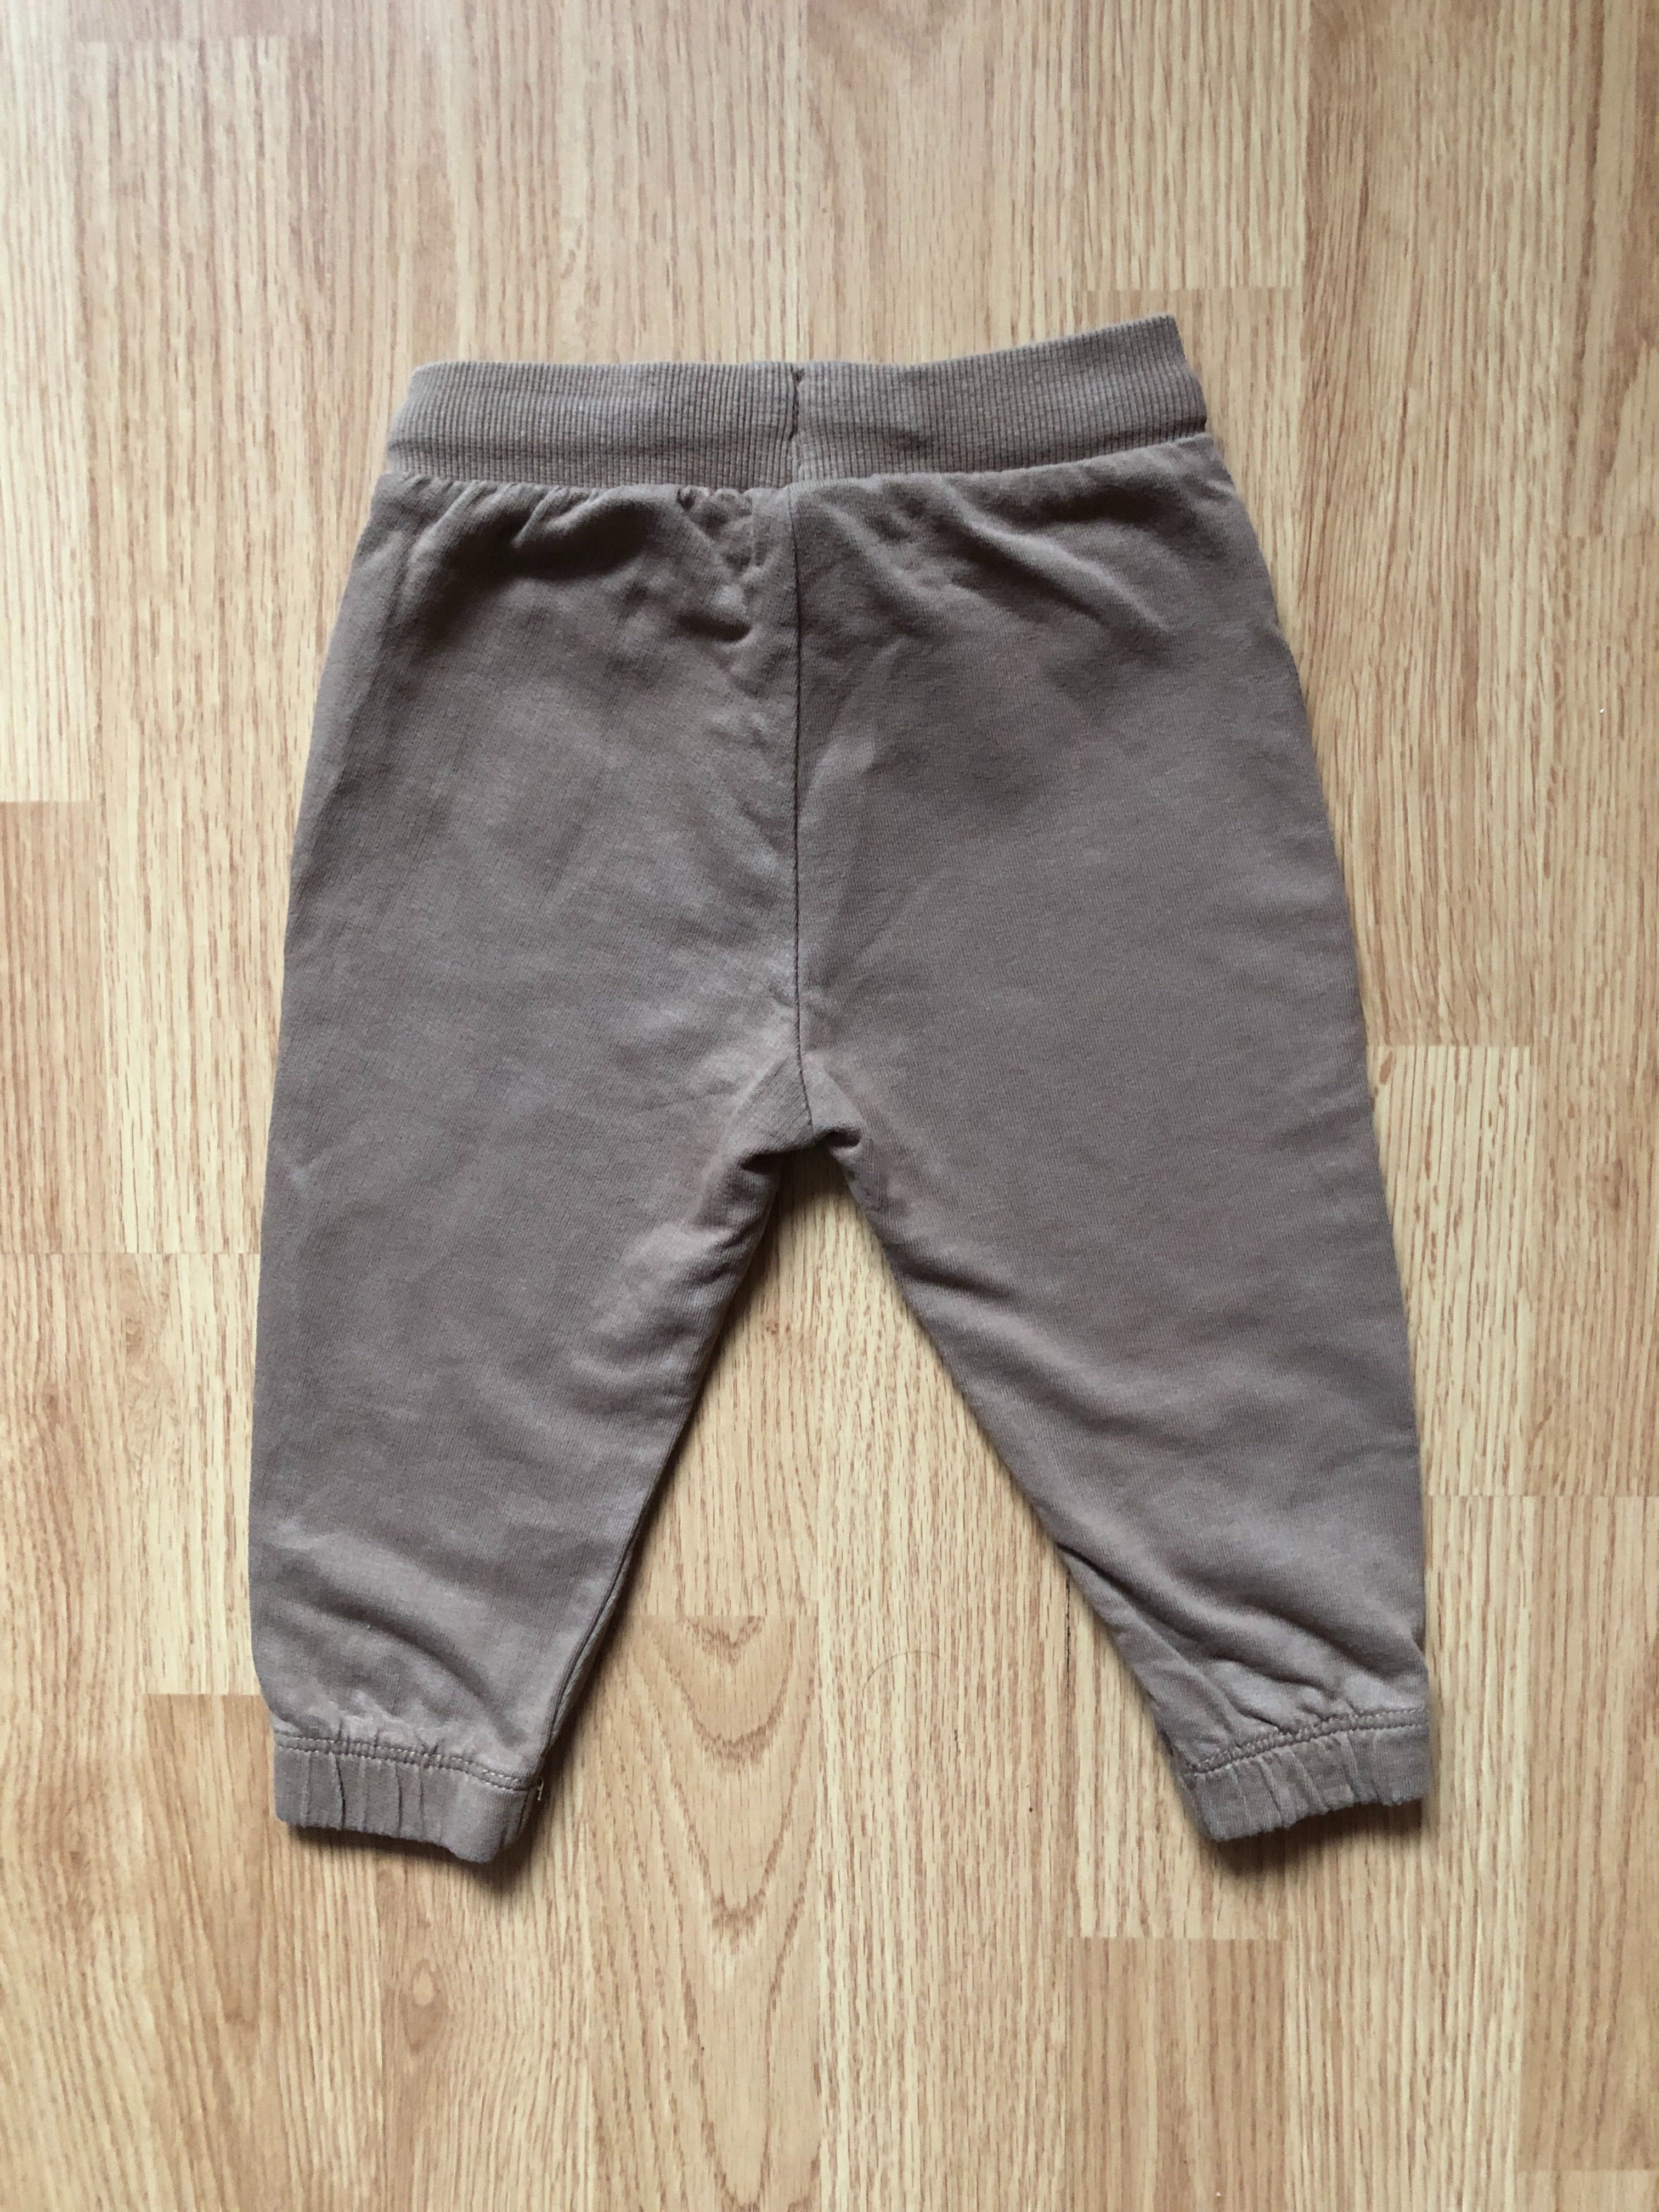 Spodnie dla chłopczyka brązowe, motyw mikołajkowy, rozmiar 80, Pepco